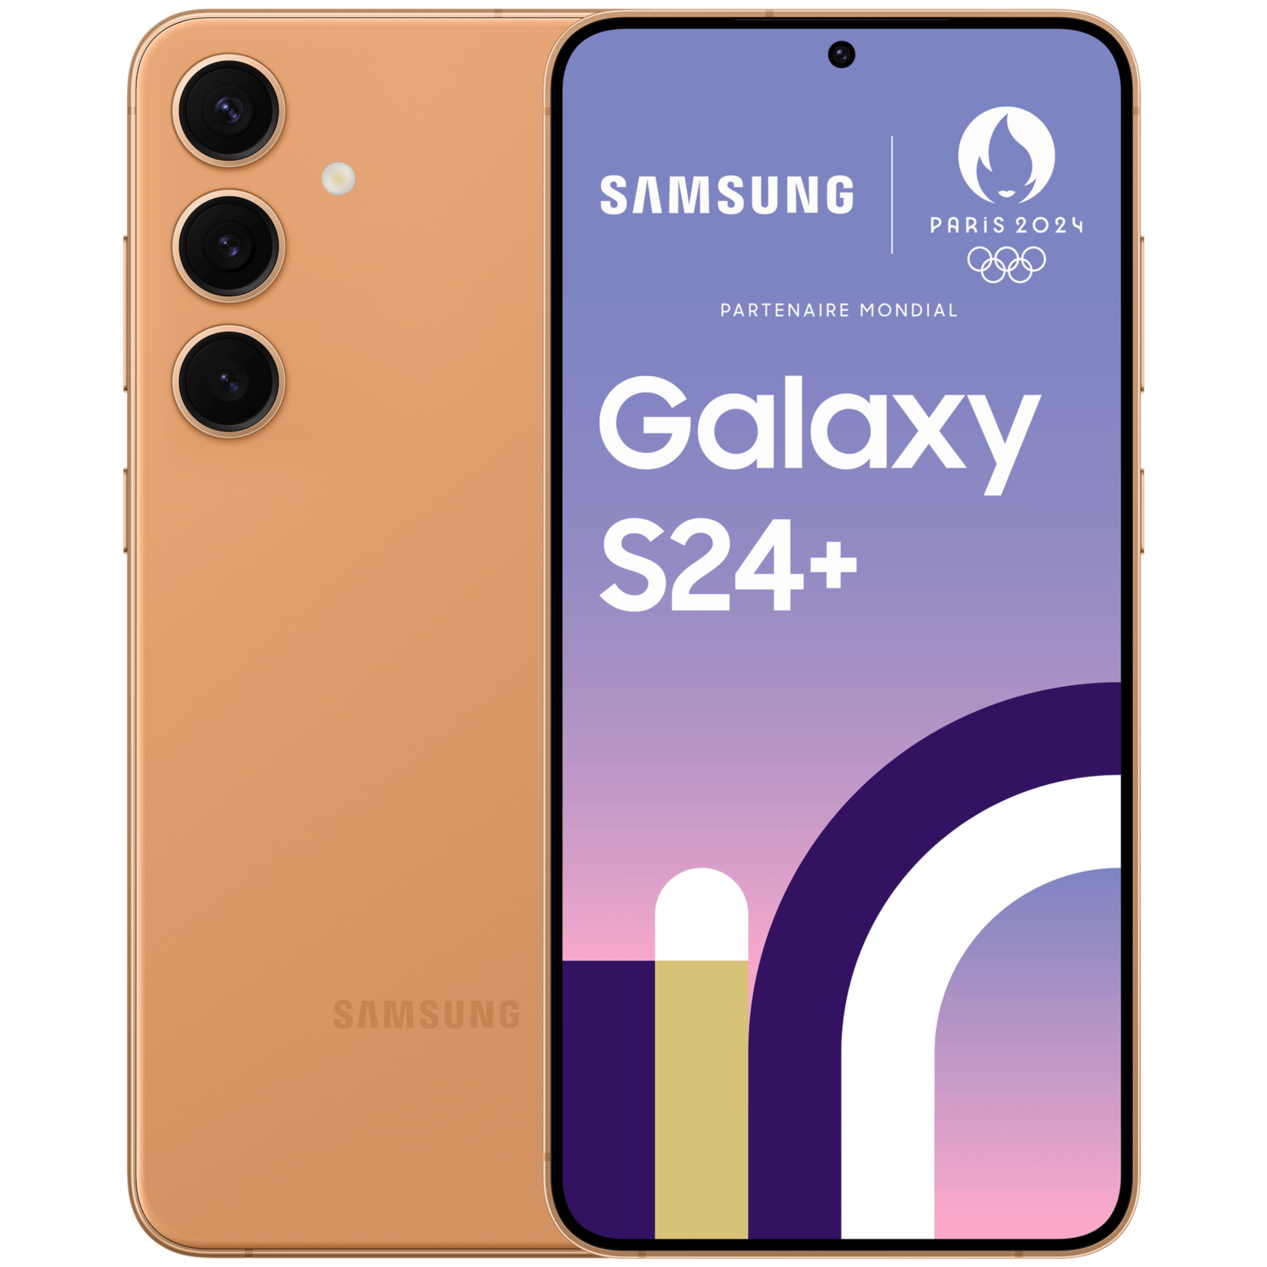 Galaxy S24+ (Couleurs Exclusives) offre à 1169€ sur Samsung